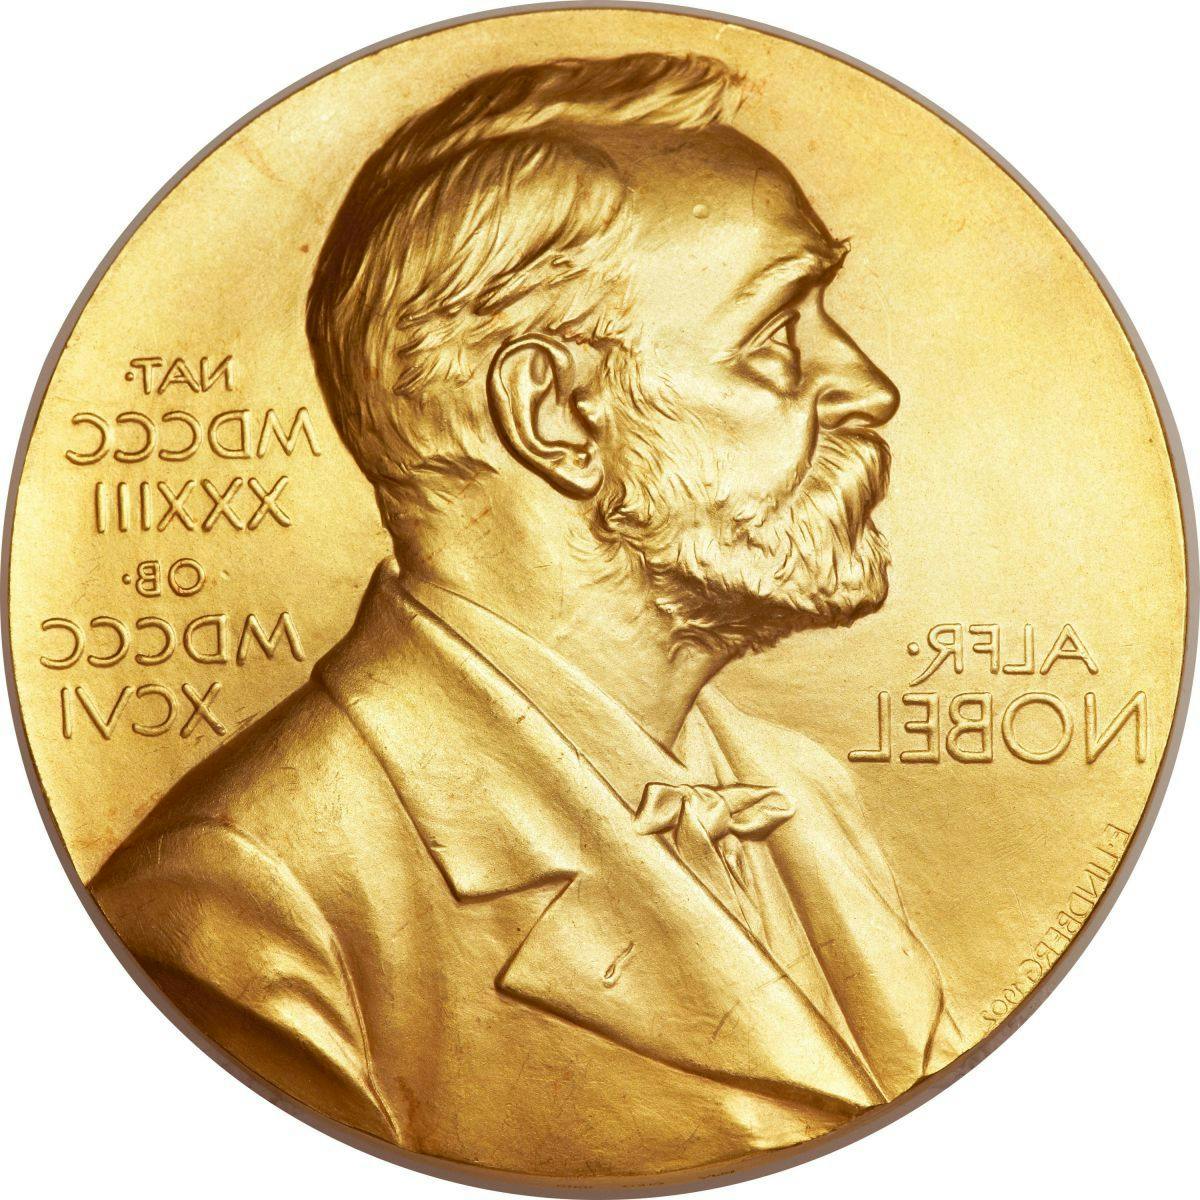 Nobel Prize in Chemistry Awarded for Cyro-Electrion Microscopy